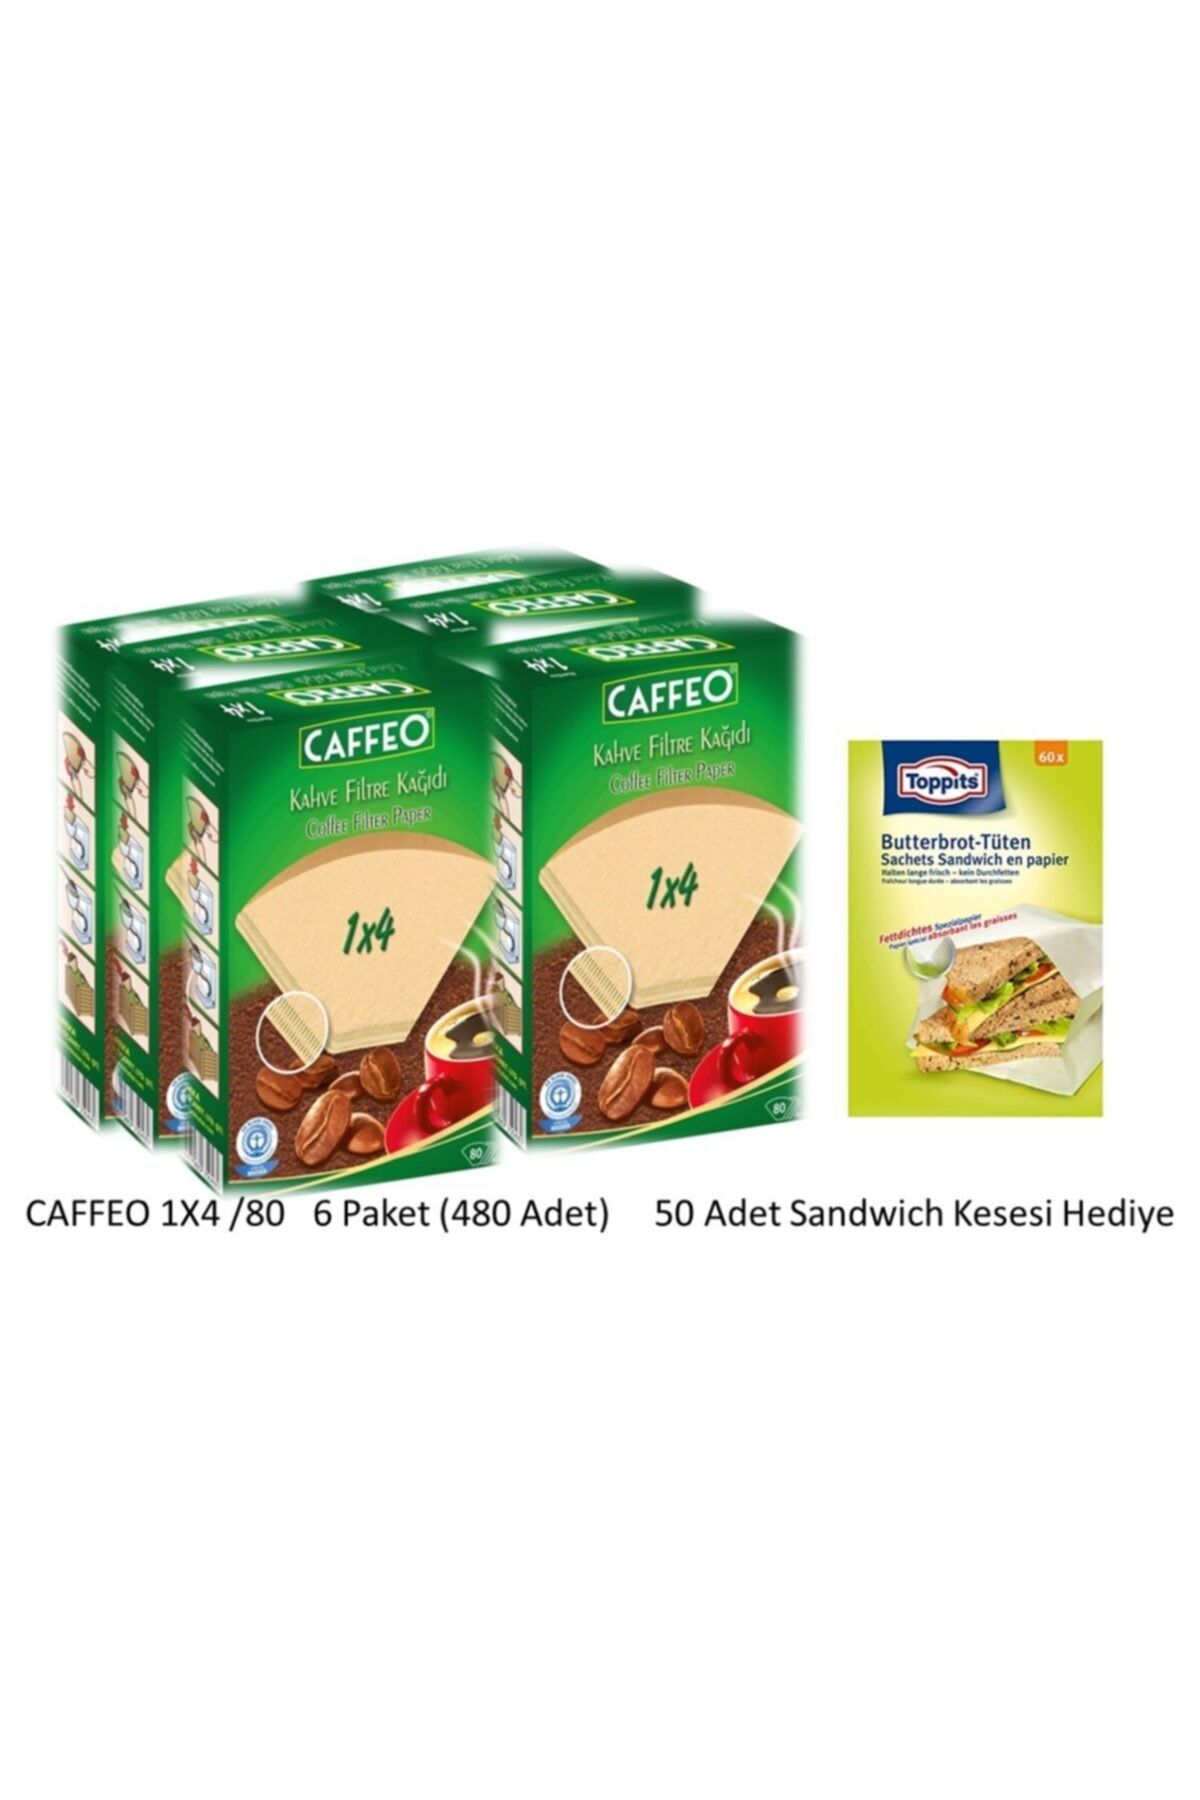 Caffeo 1x4/80 Kahve Filtresi-6 Paket(480adet)+sandeviç Kese Kağıdı Hediyeli